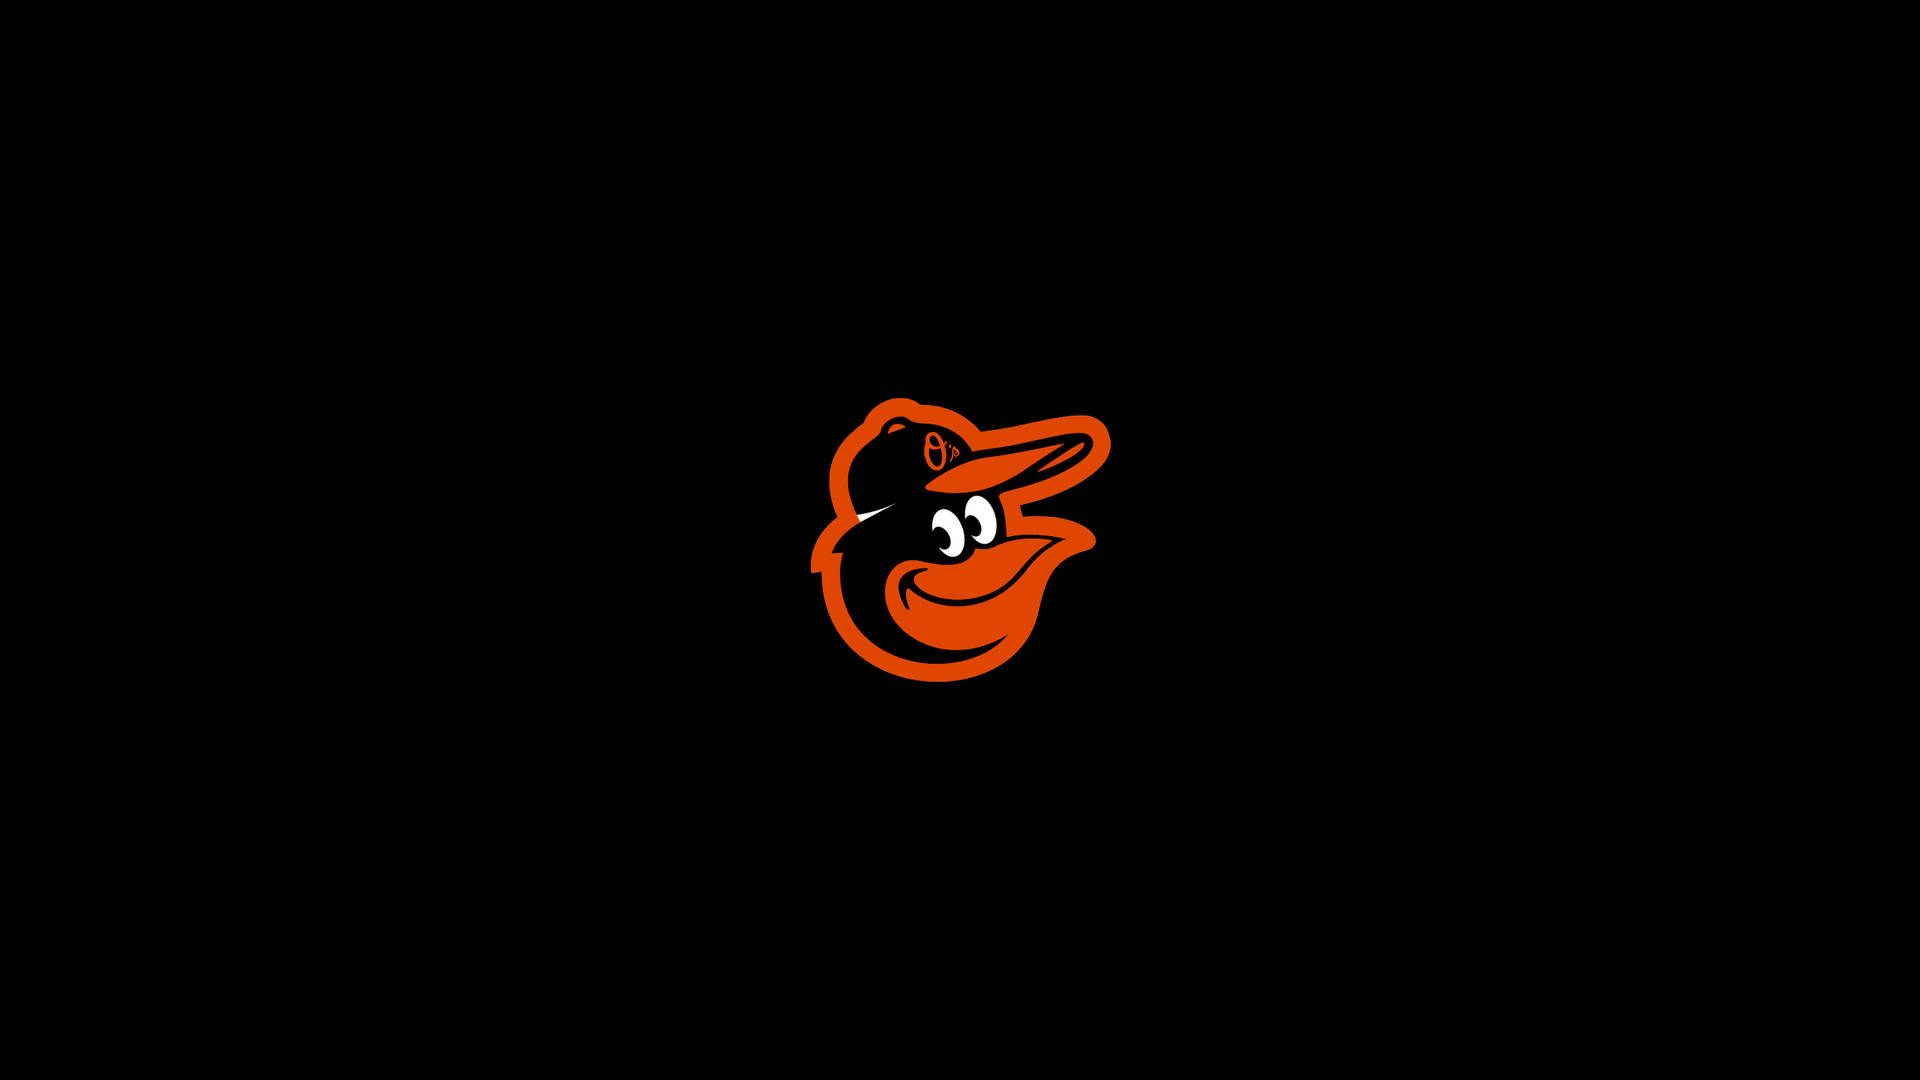 2019 Baltimore Orioles Logo Background